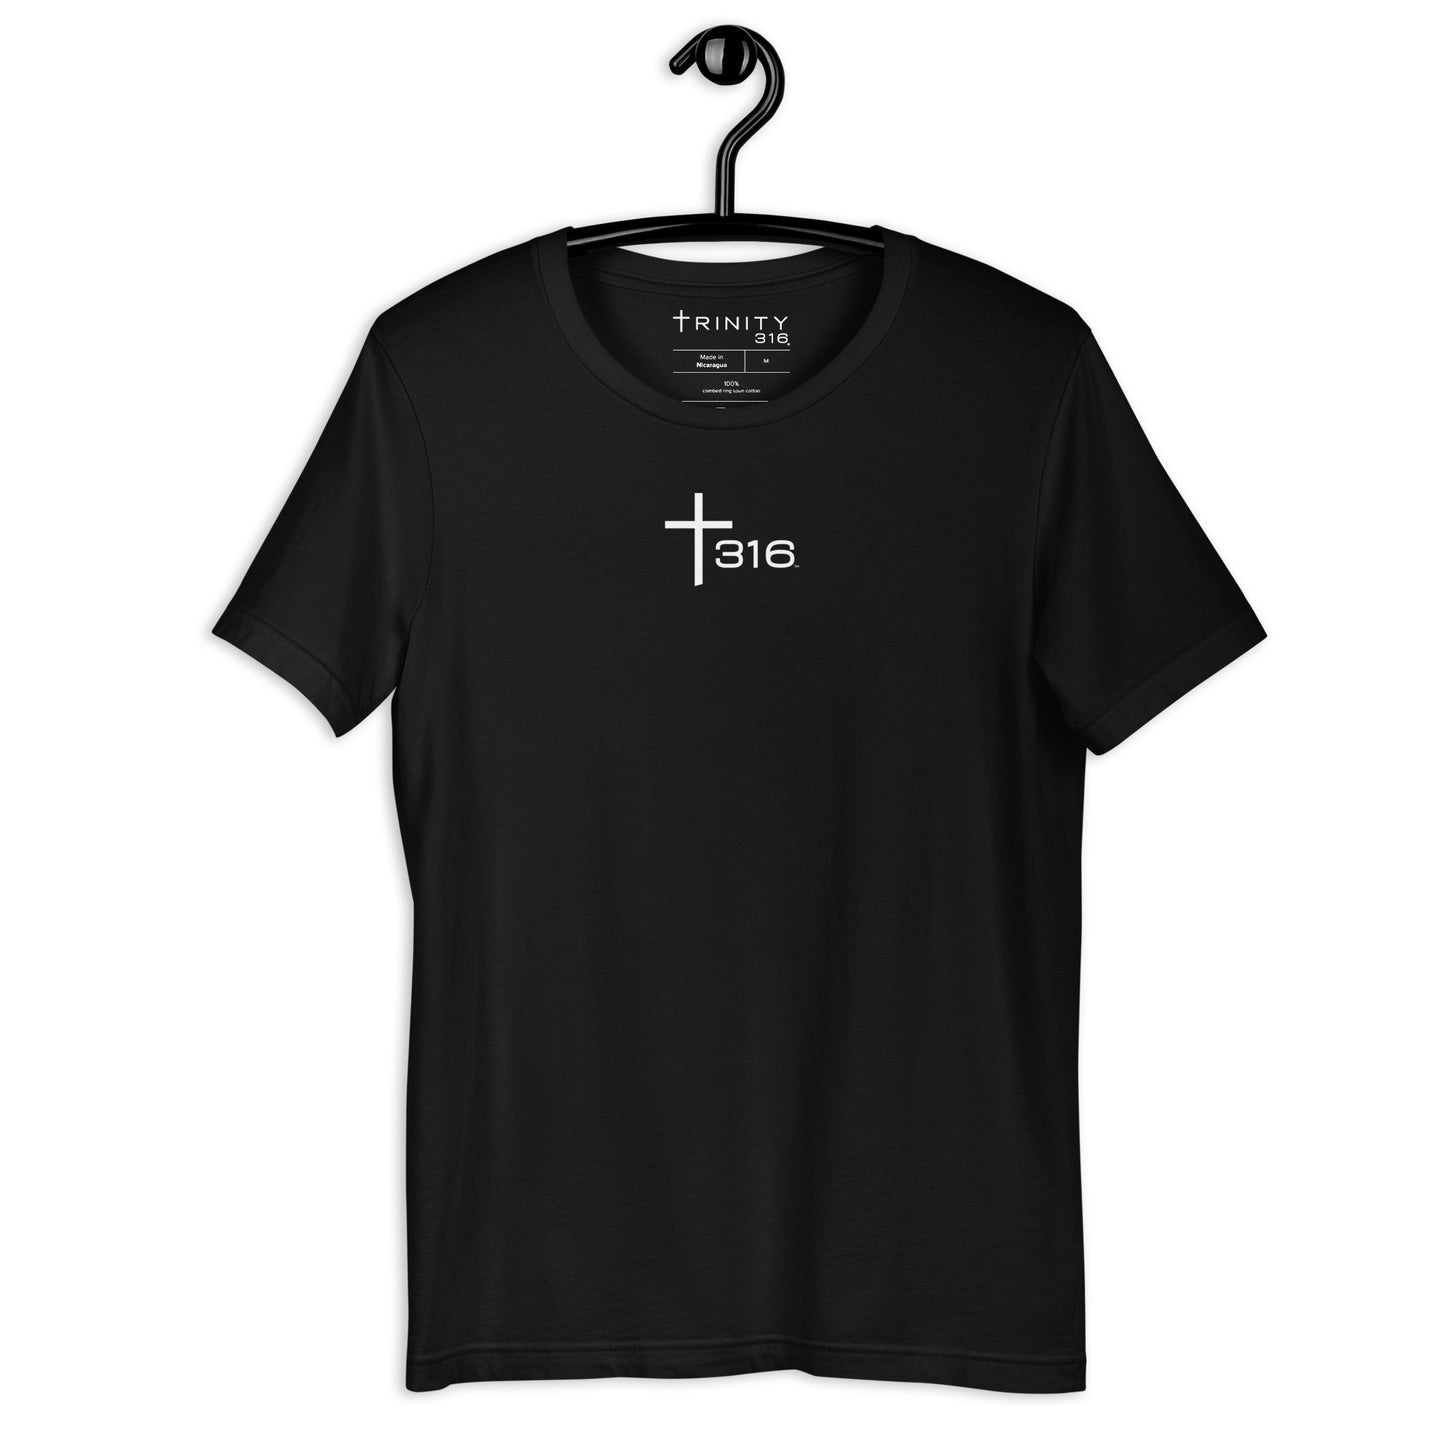 Trinity 316 ICON  T-Shirt | V2 -Black